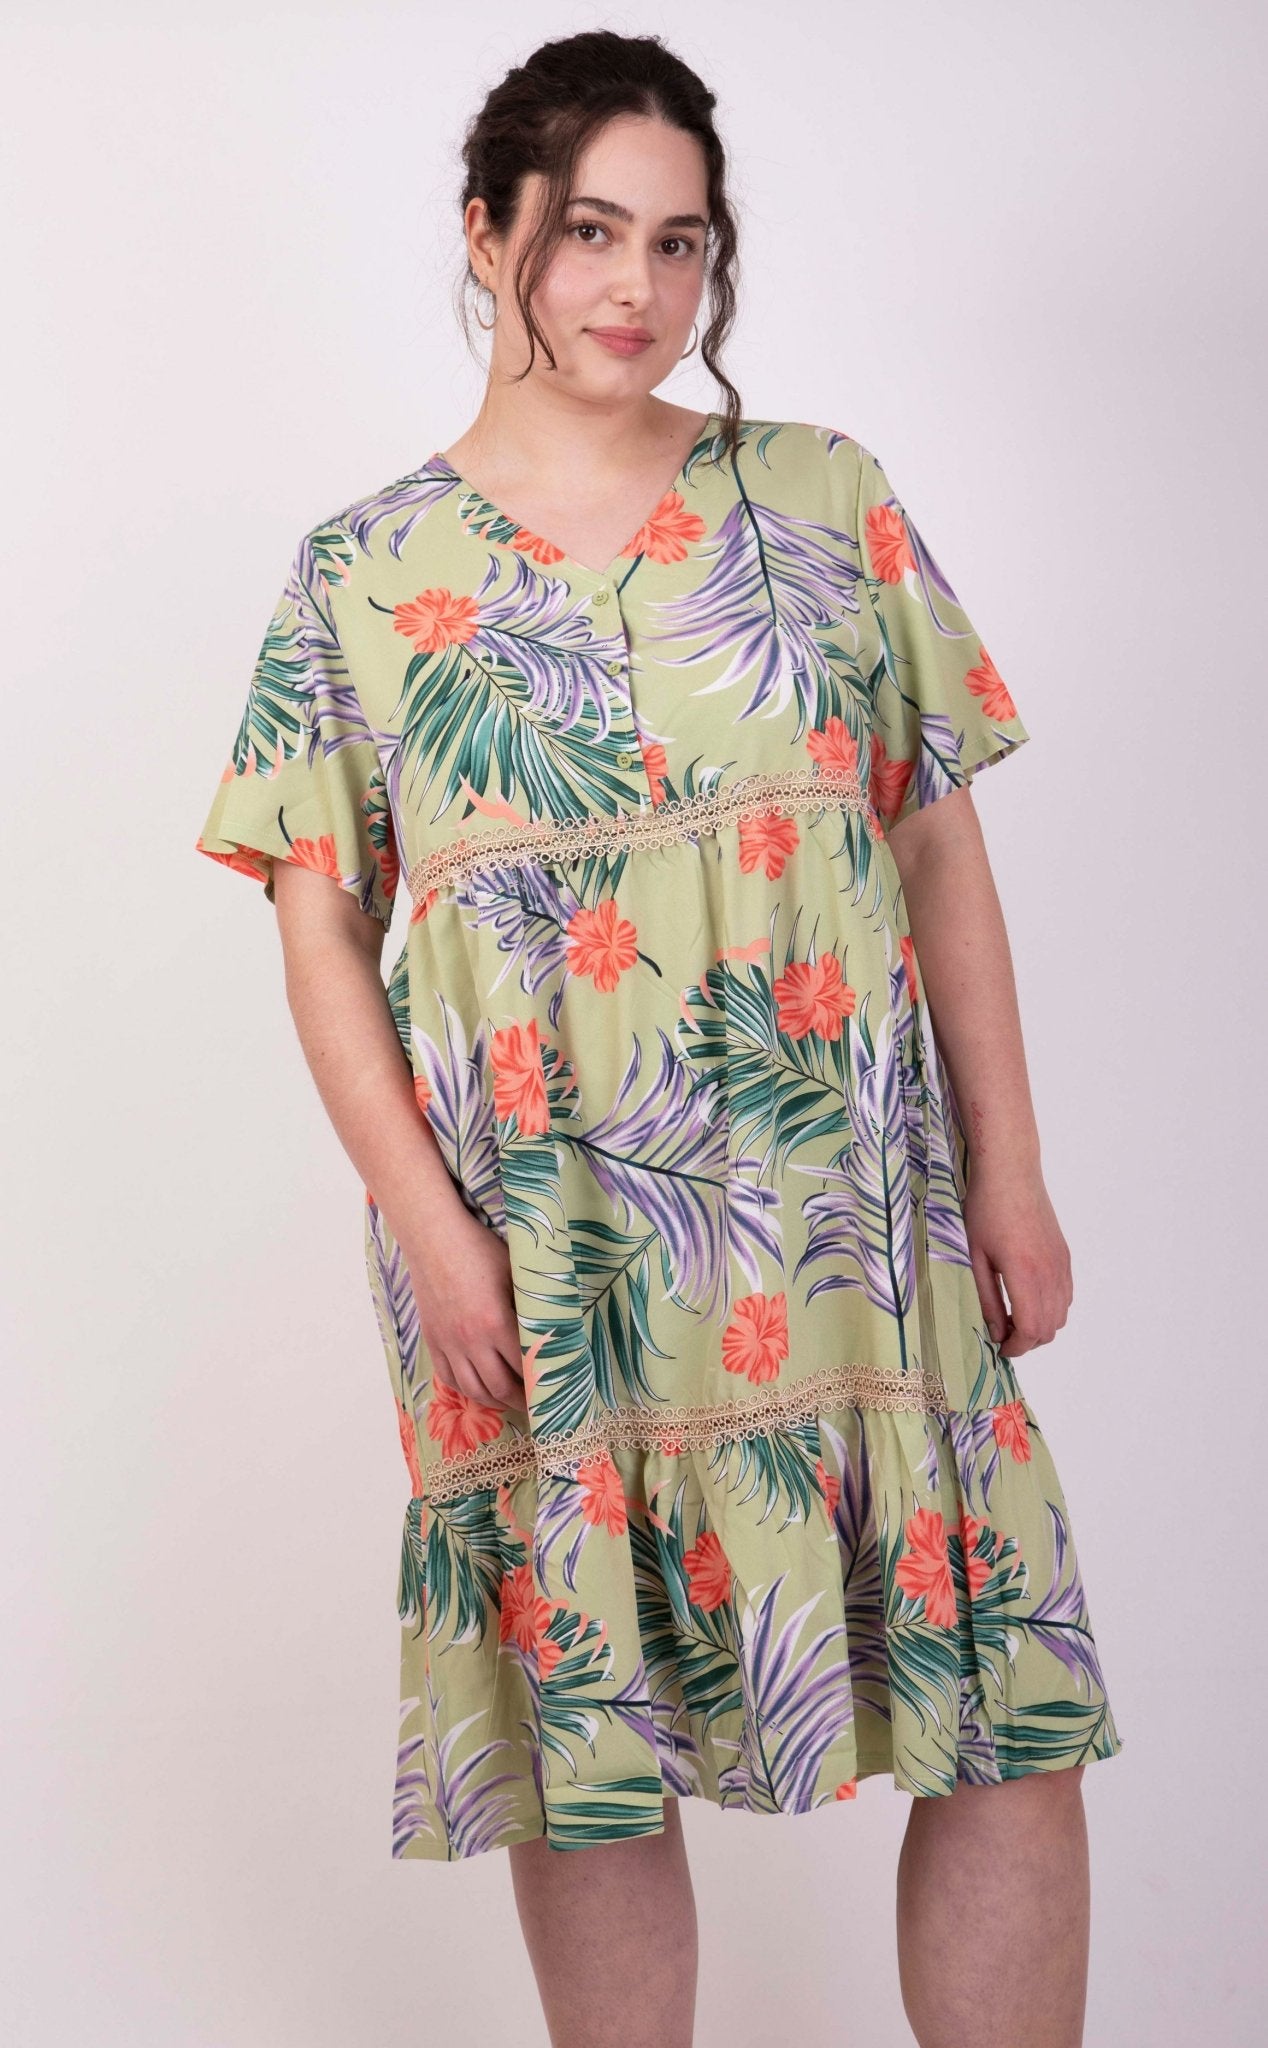 Sommerkleid mit floralem Muster: Ein luftiger Hingucker für heiße Tage - incurvy